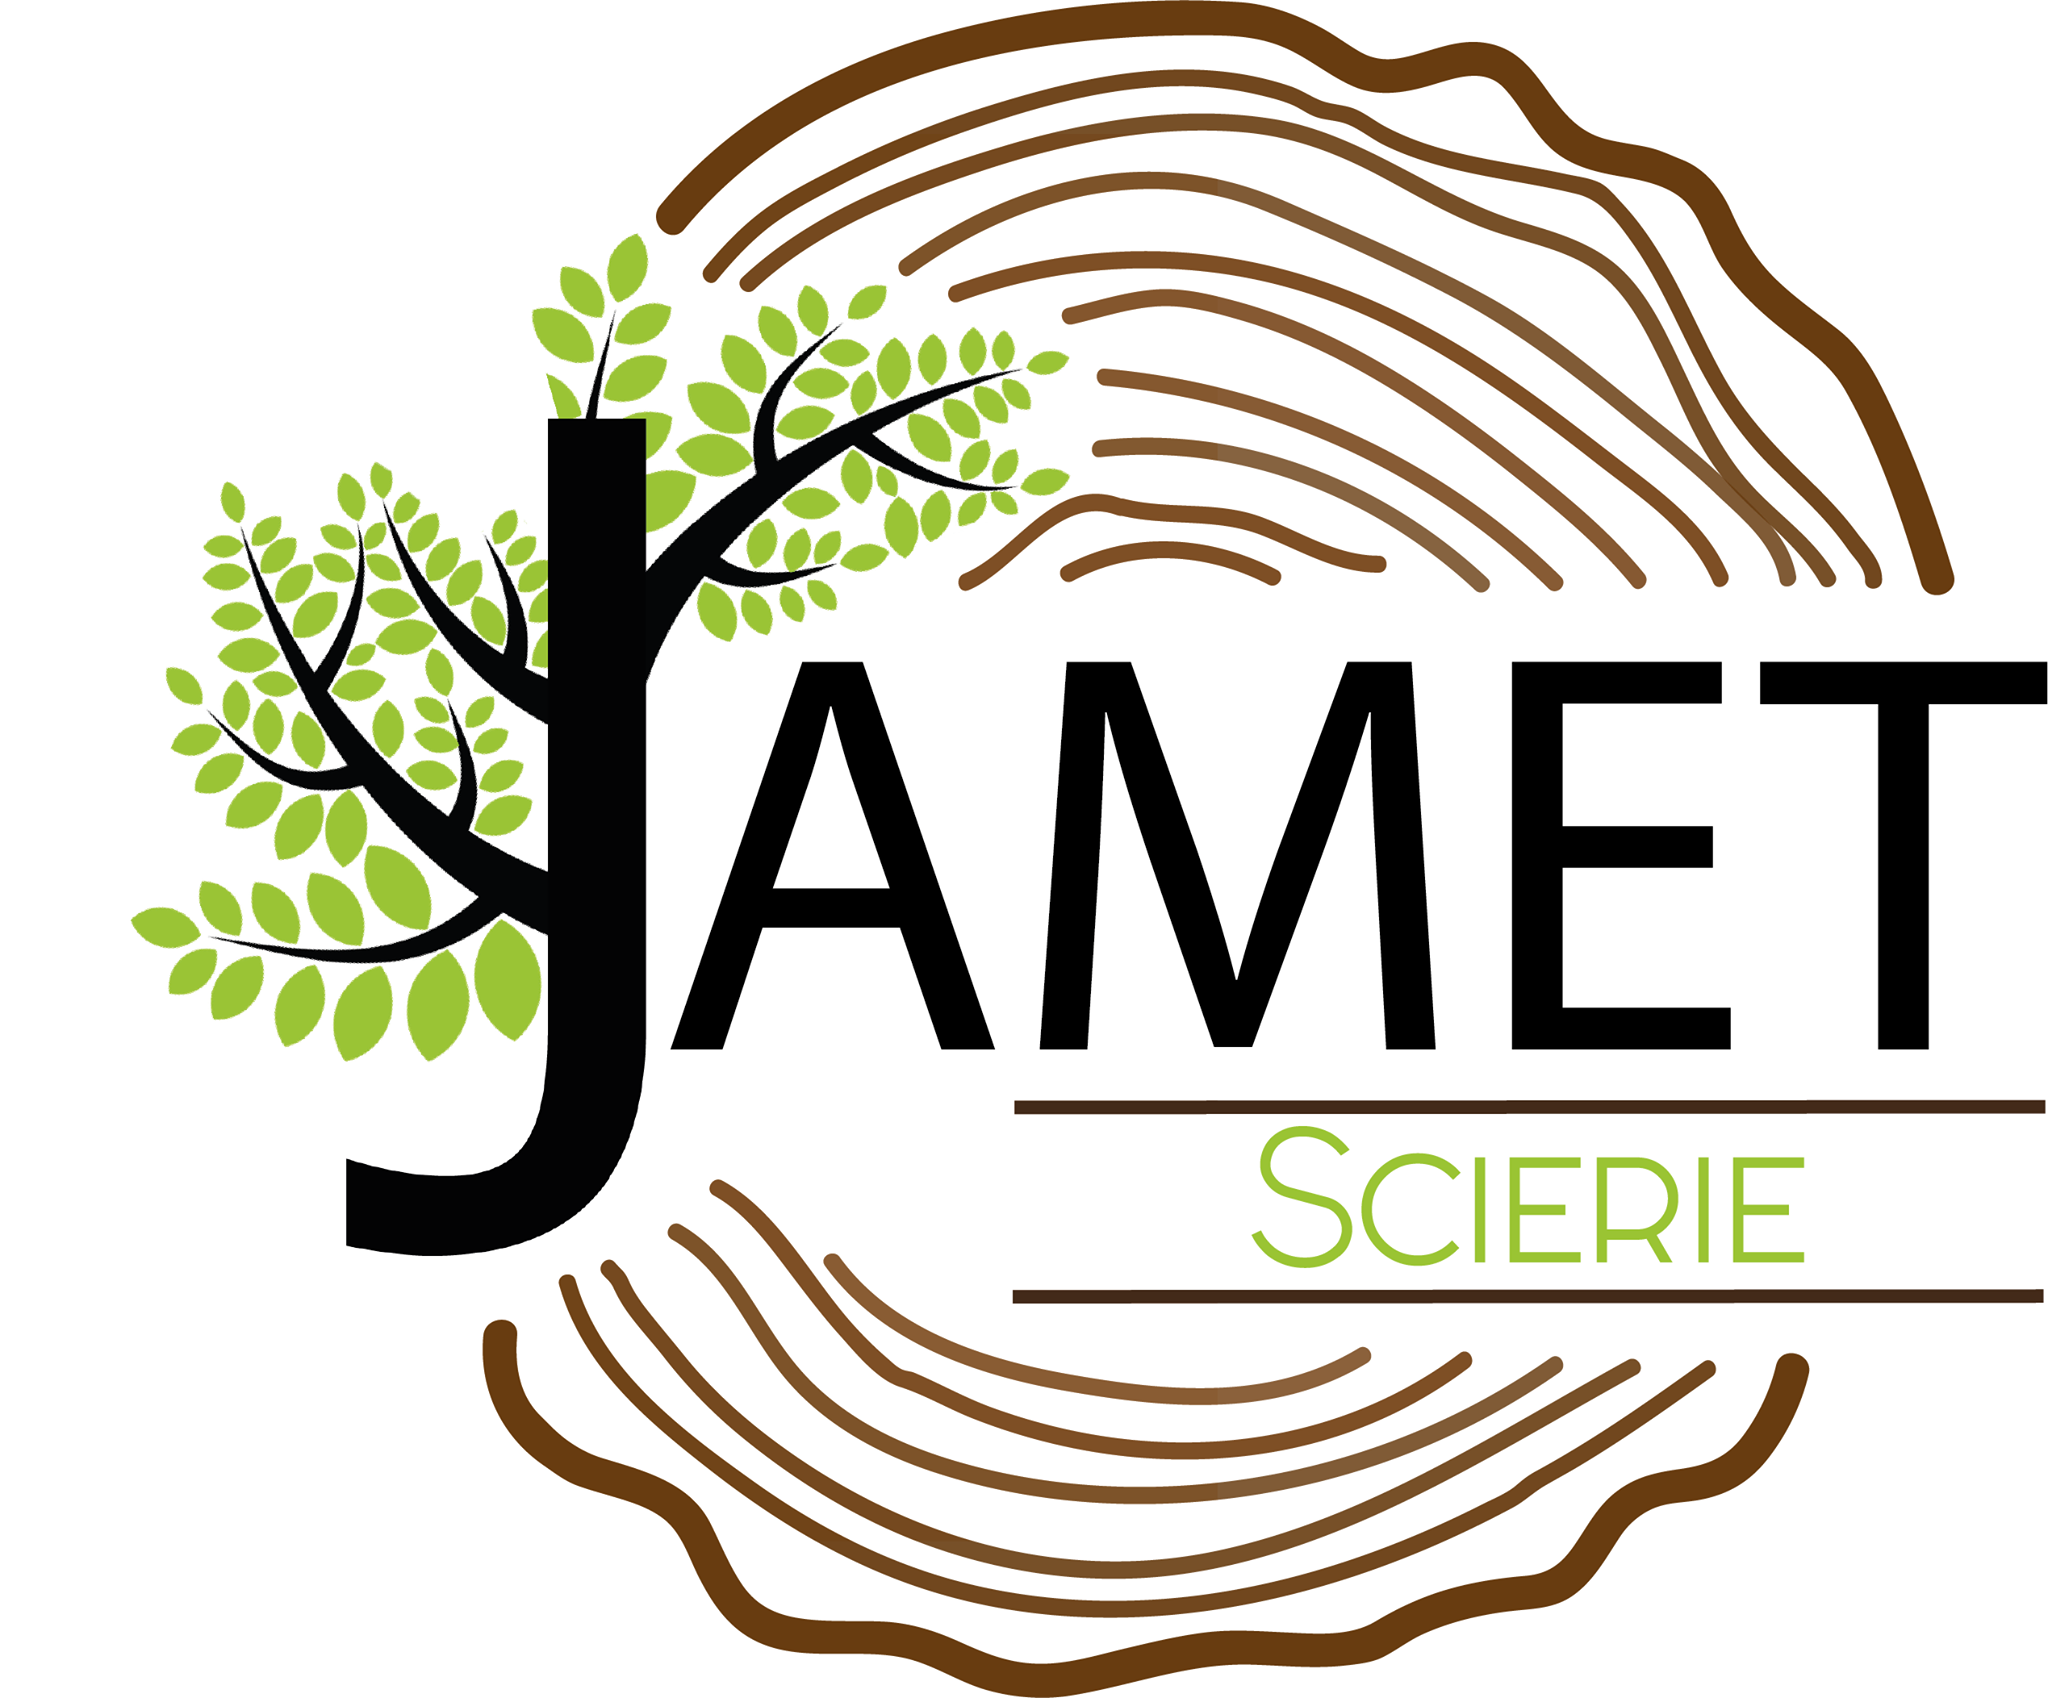 Logo JAMET